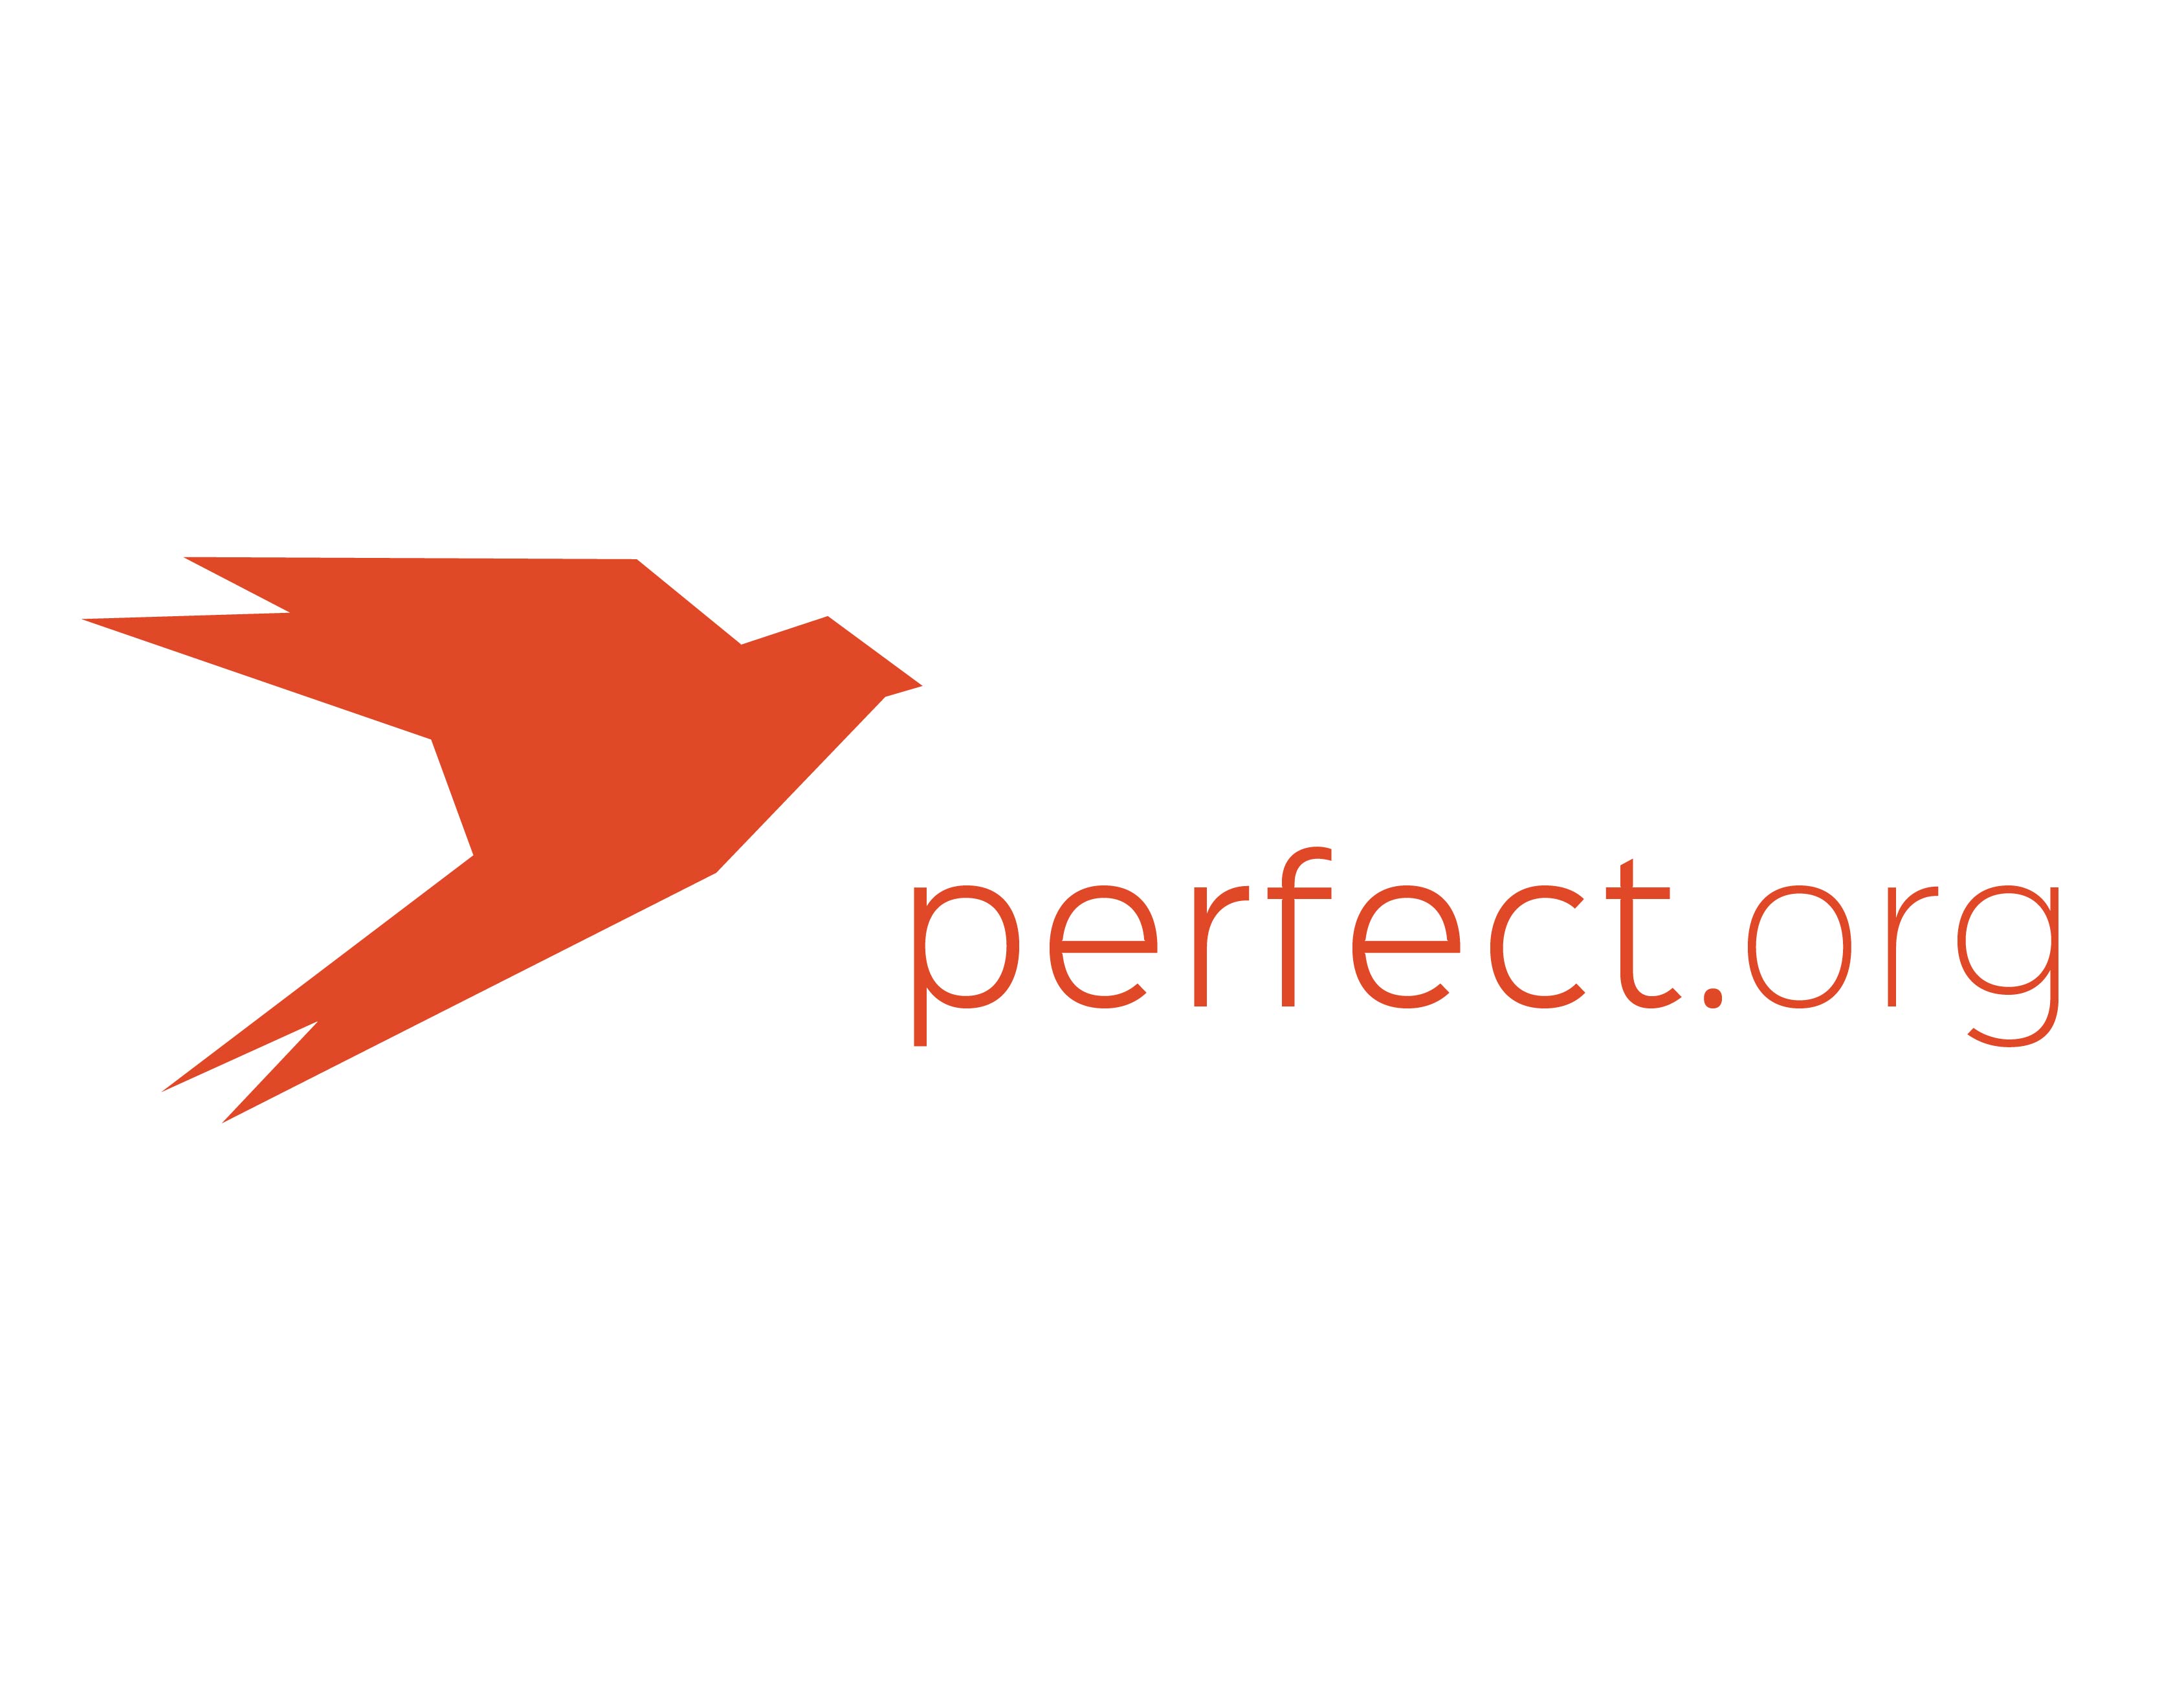 Orange themed Perfect app icon